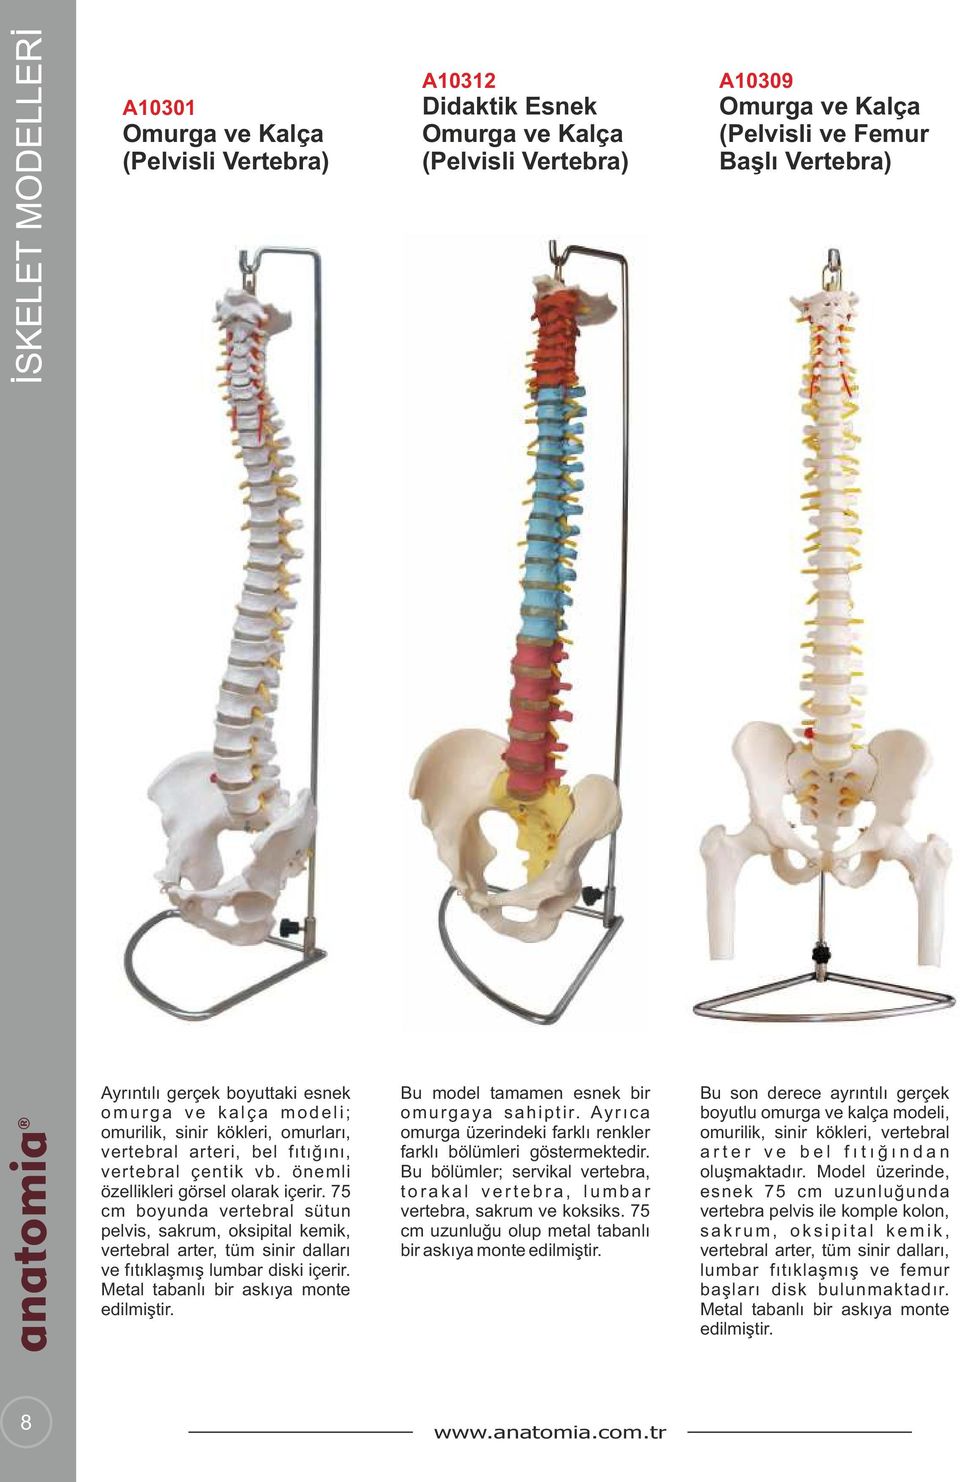 75 cm boyunda vertebral sütun pelvis, sakrum, oksipital kemik, vertebral arter, tüm sinir dalları ve fıtıklaşmış lumbar diski içerir. Metal tabanlı bir askıya monte edilmiştir.